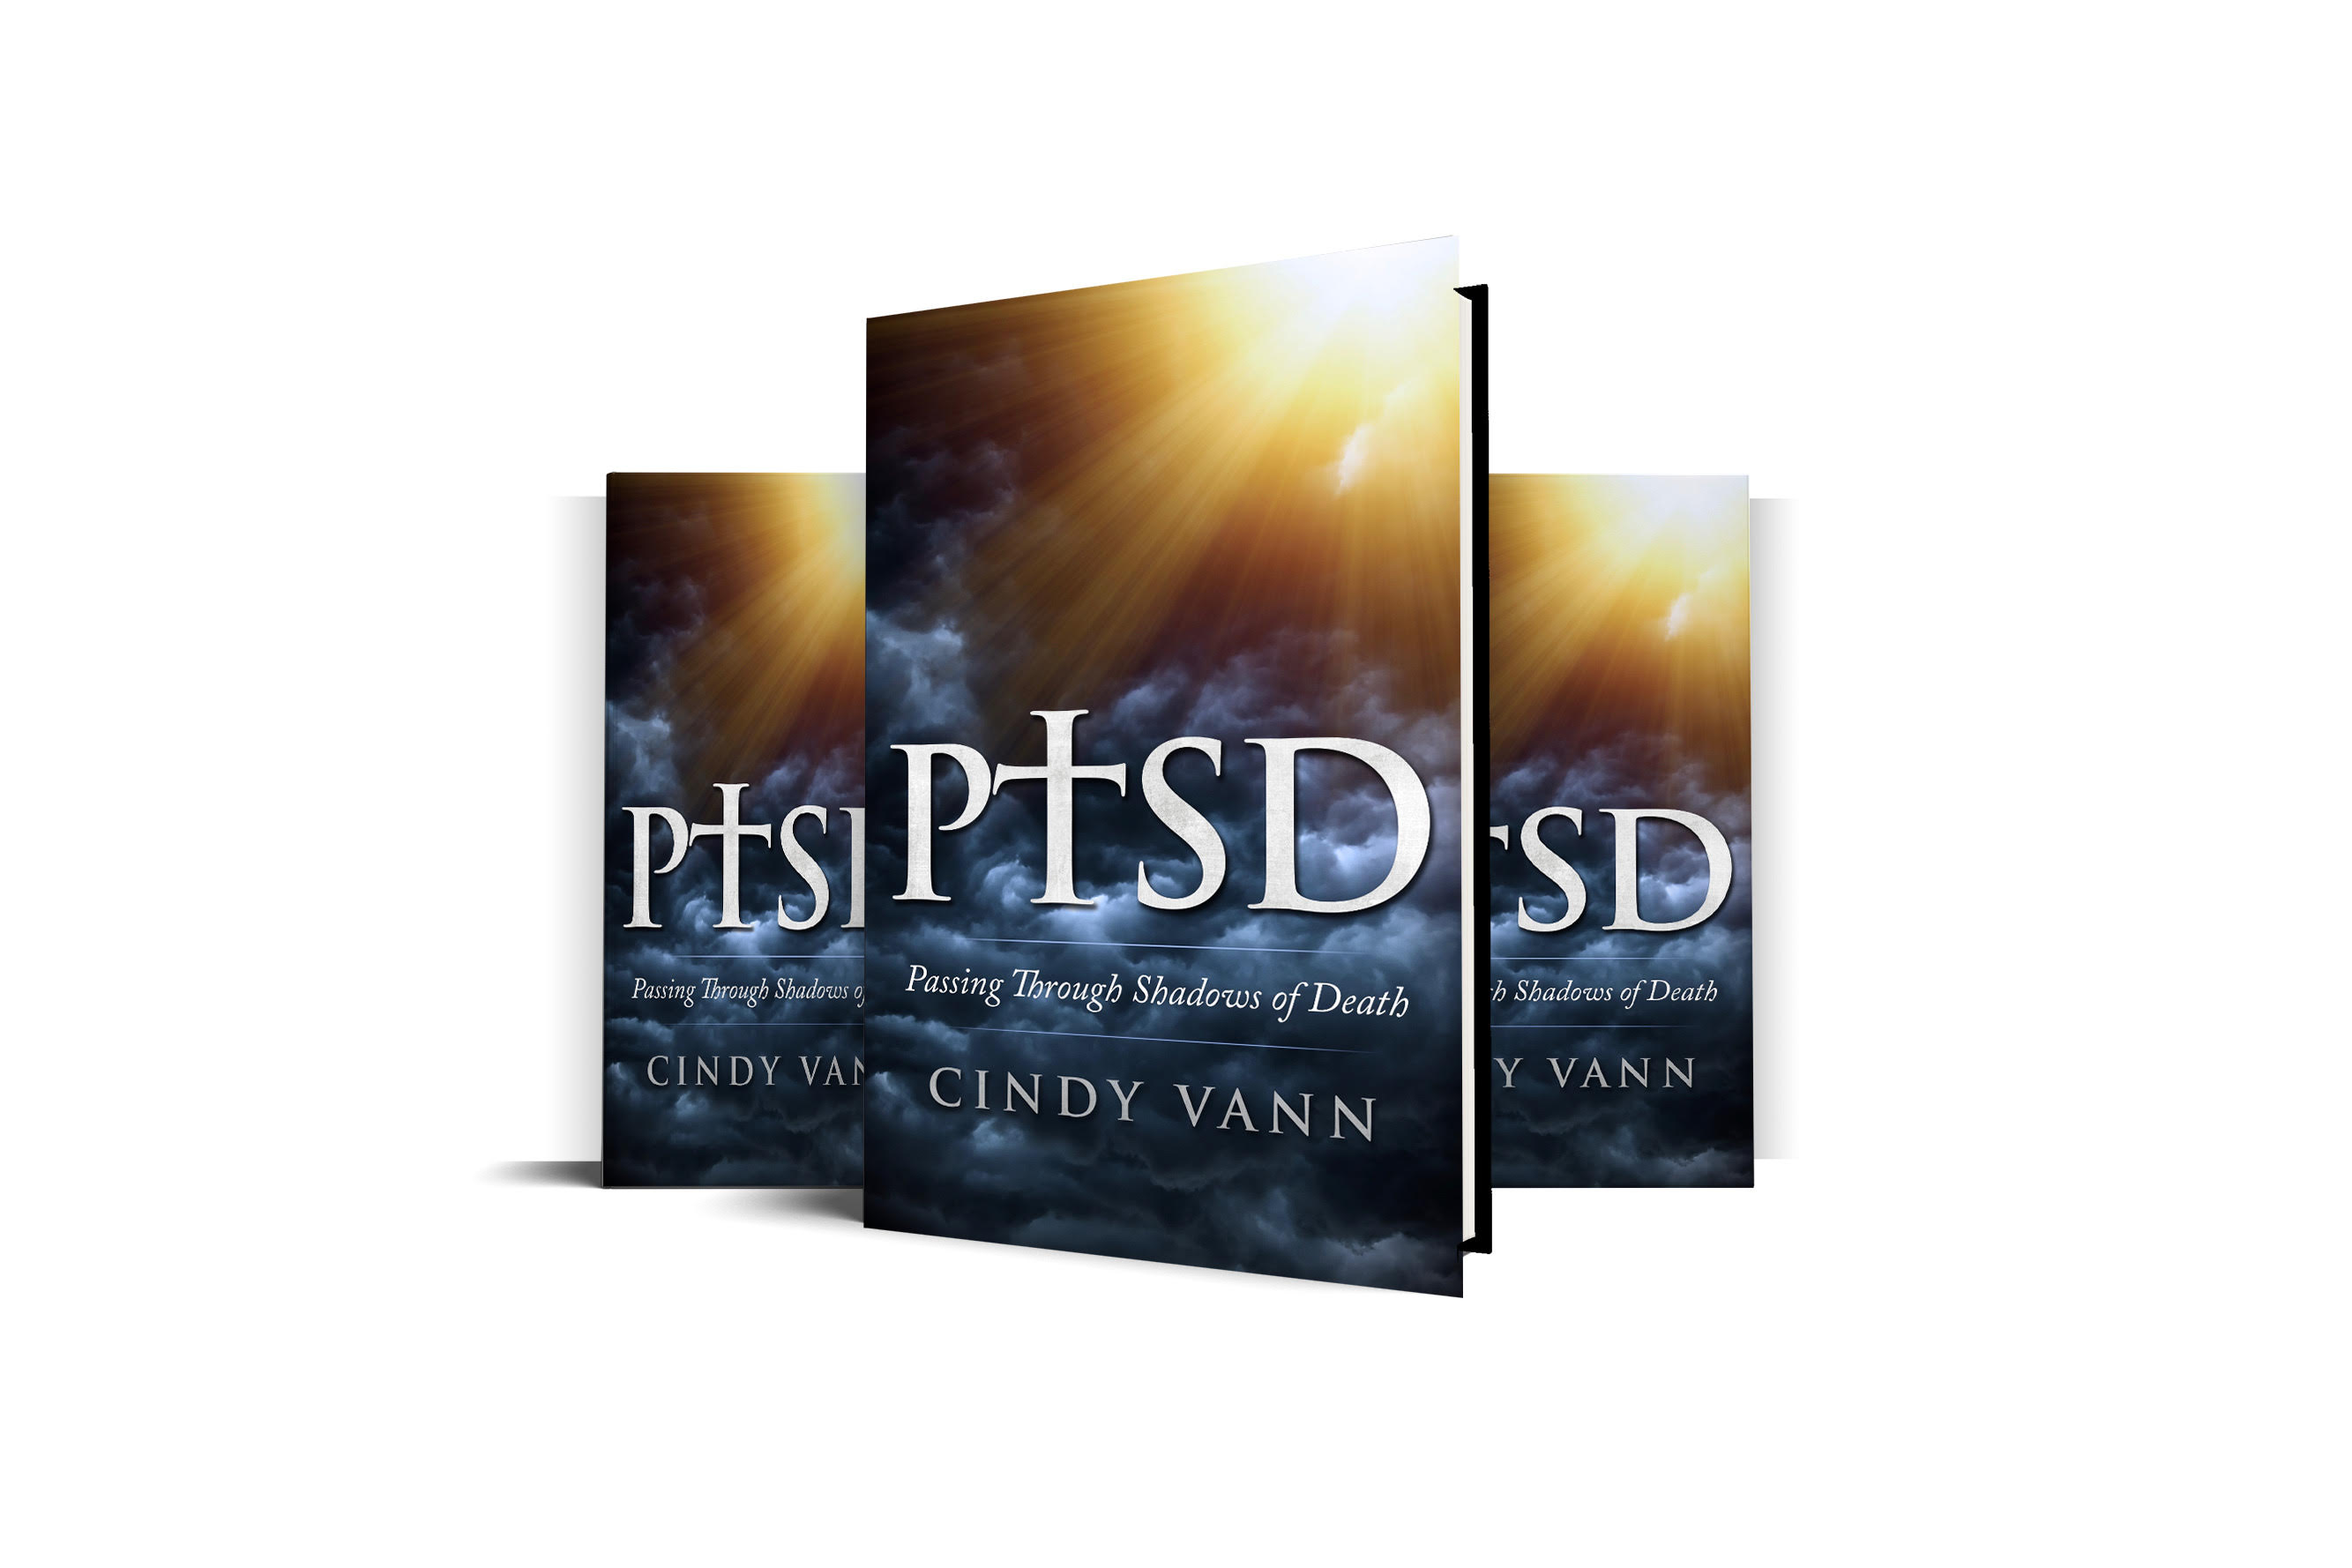 PTSD Book